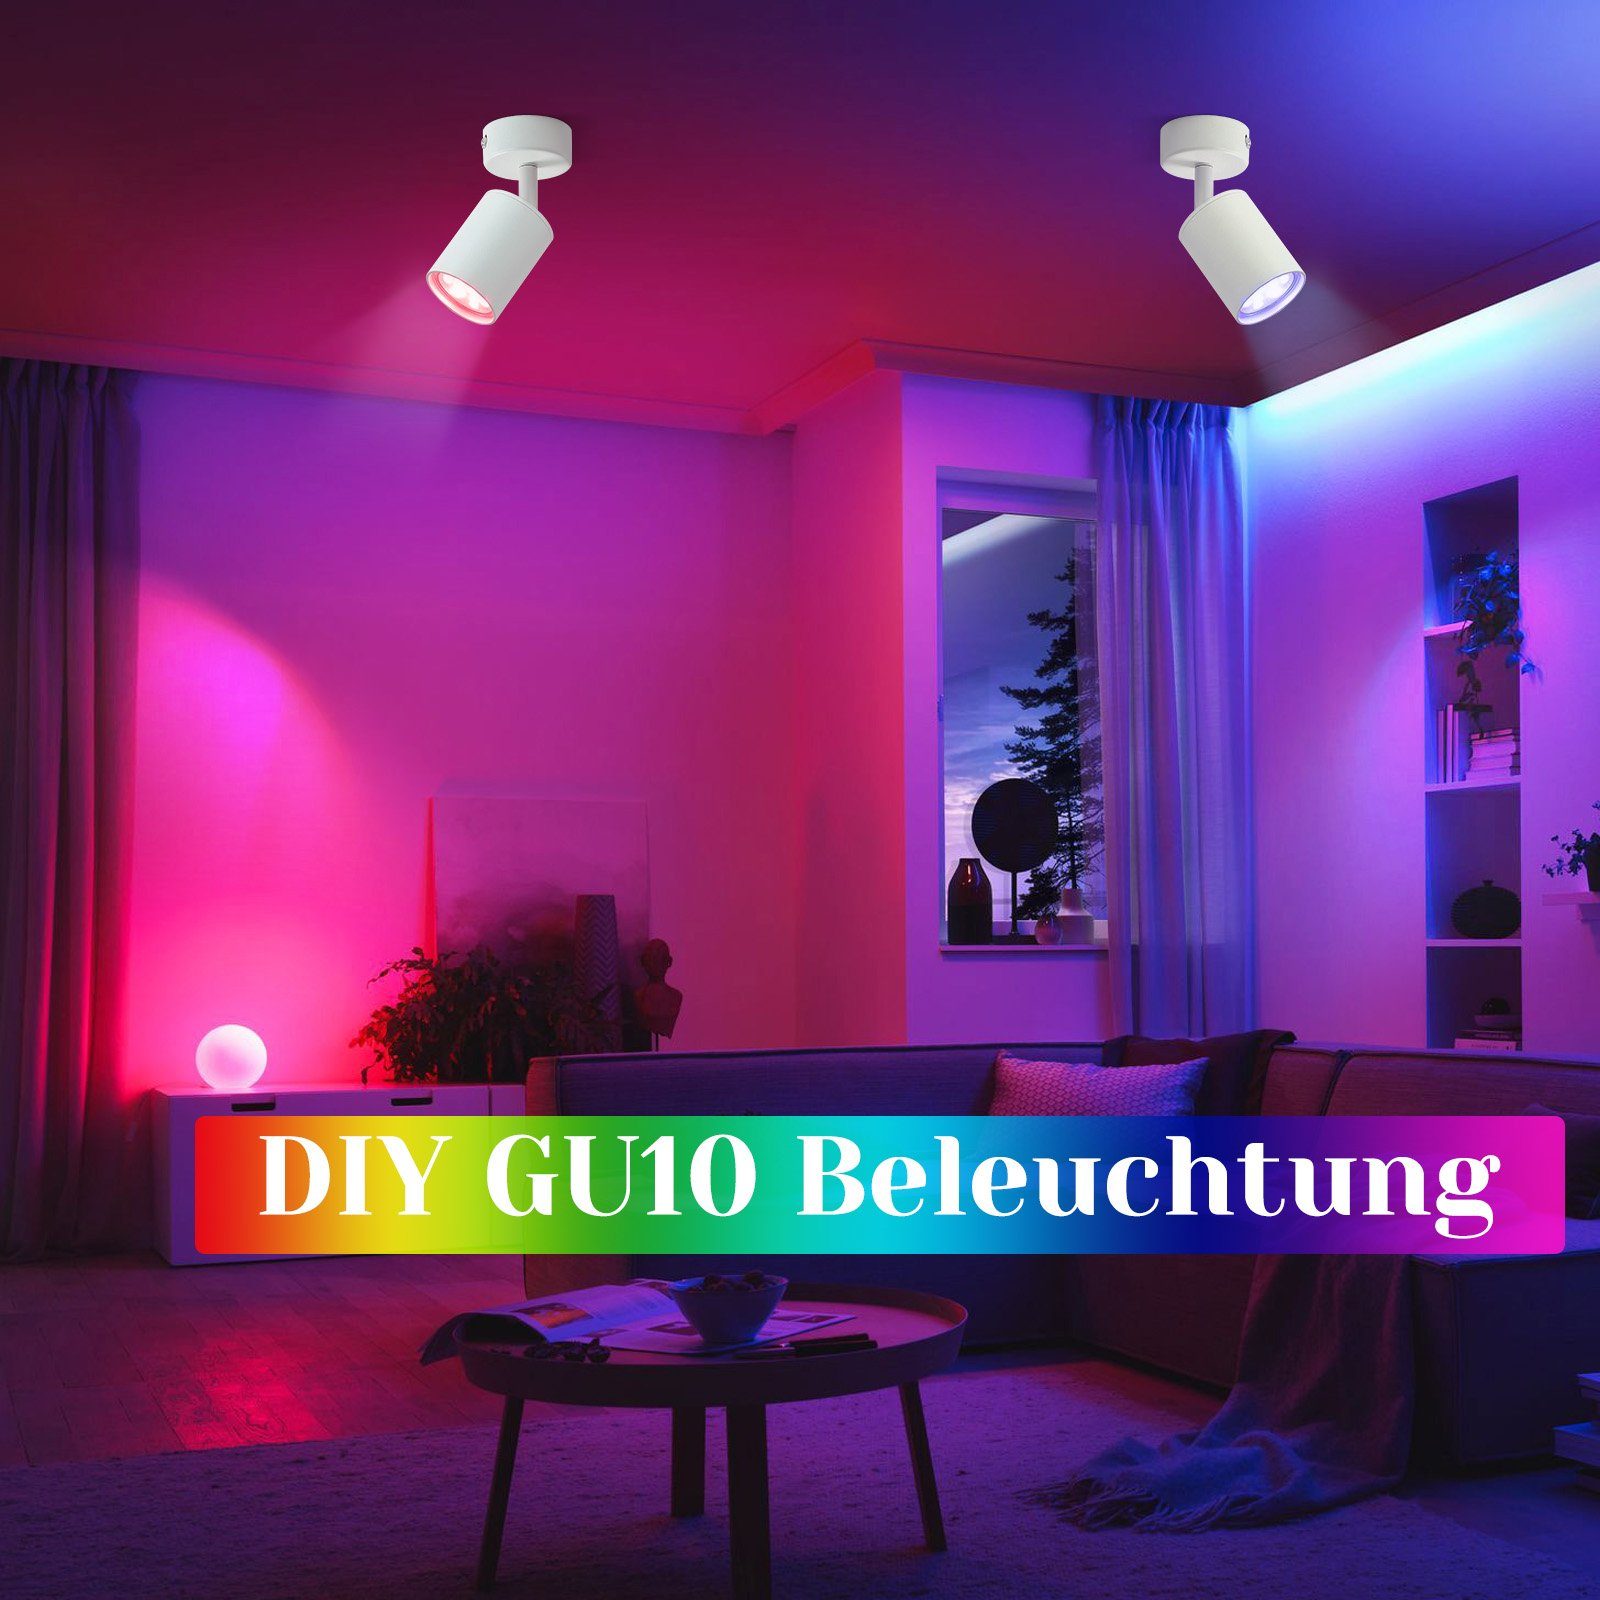 integriert, Modern LED LED Wandstrahler Deckenstrahler für ZMH Spots, Deckenlampe Industrial Wohnzimmer, GU10 Deckenspots LED Flurlampe Flammig Deckenstrahler: 1 Weiß fest